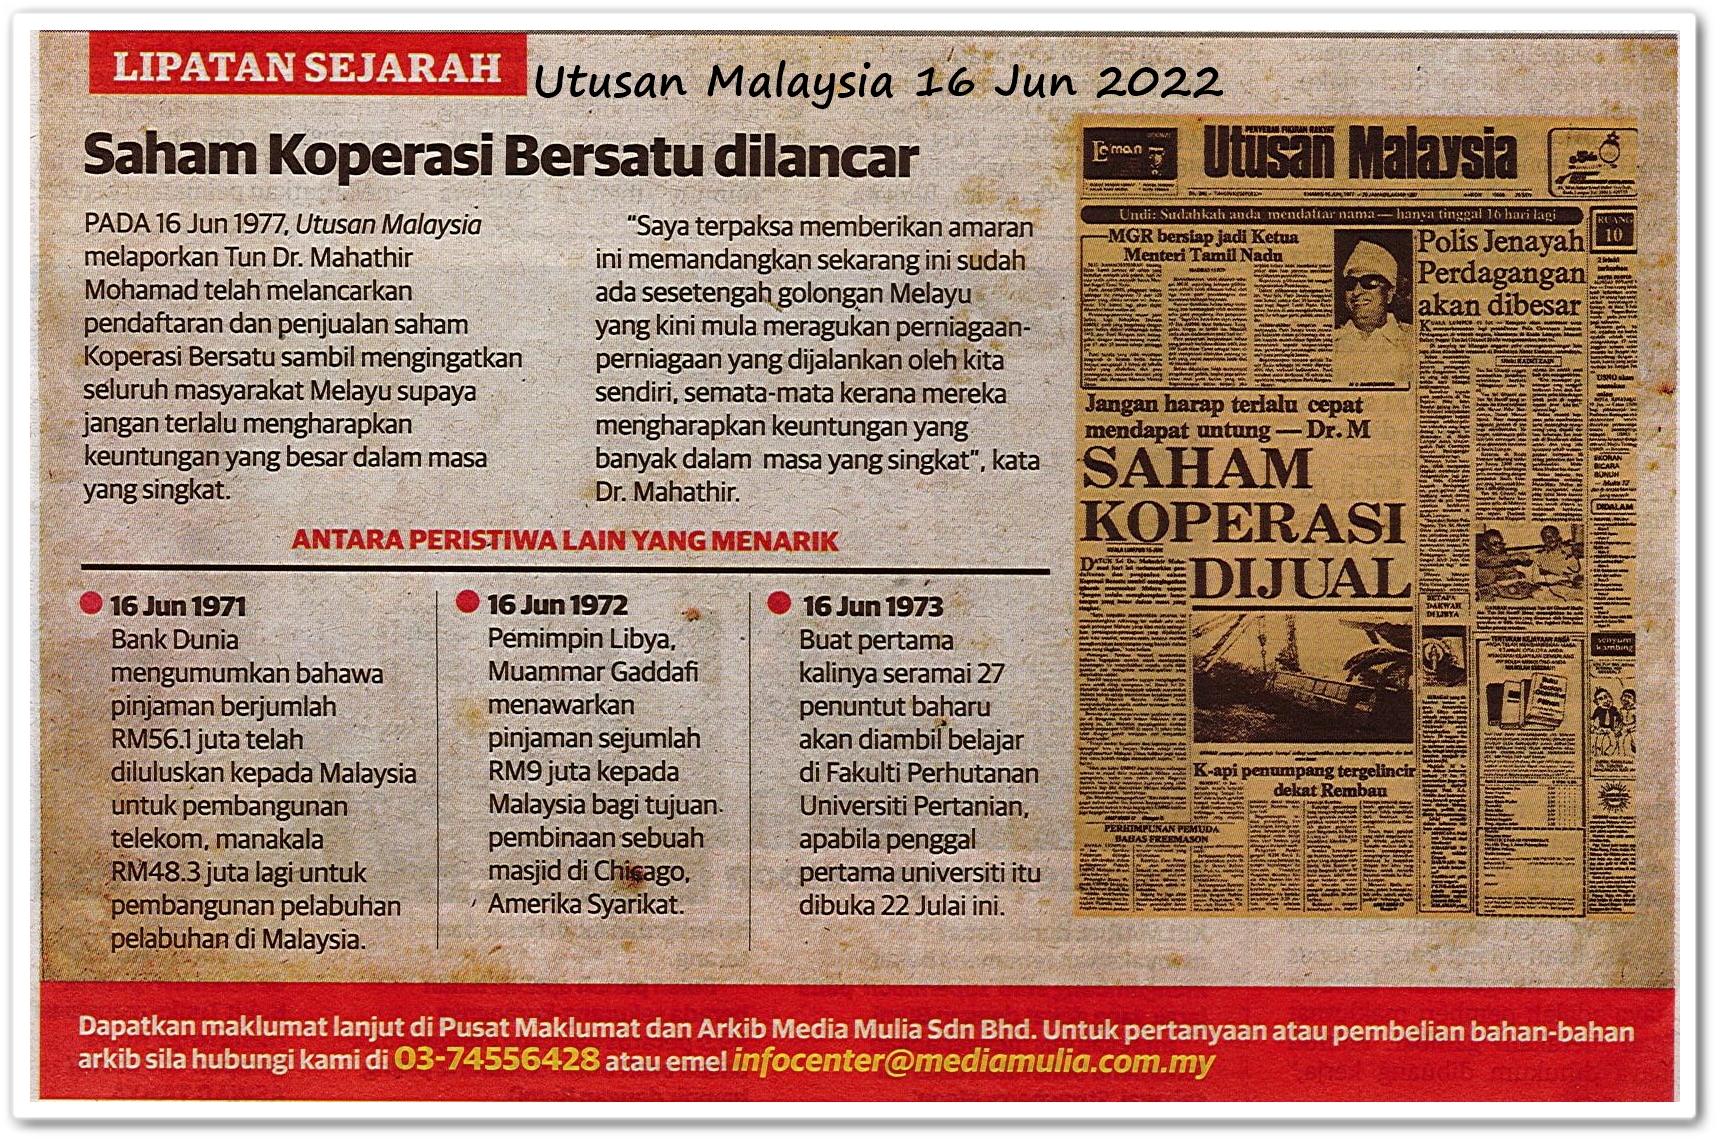 Lipatan sejarah 16 Jun - Keratan akhbar Utusan Malaysia 16 Jun 2022